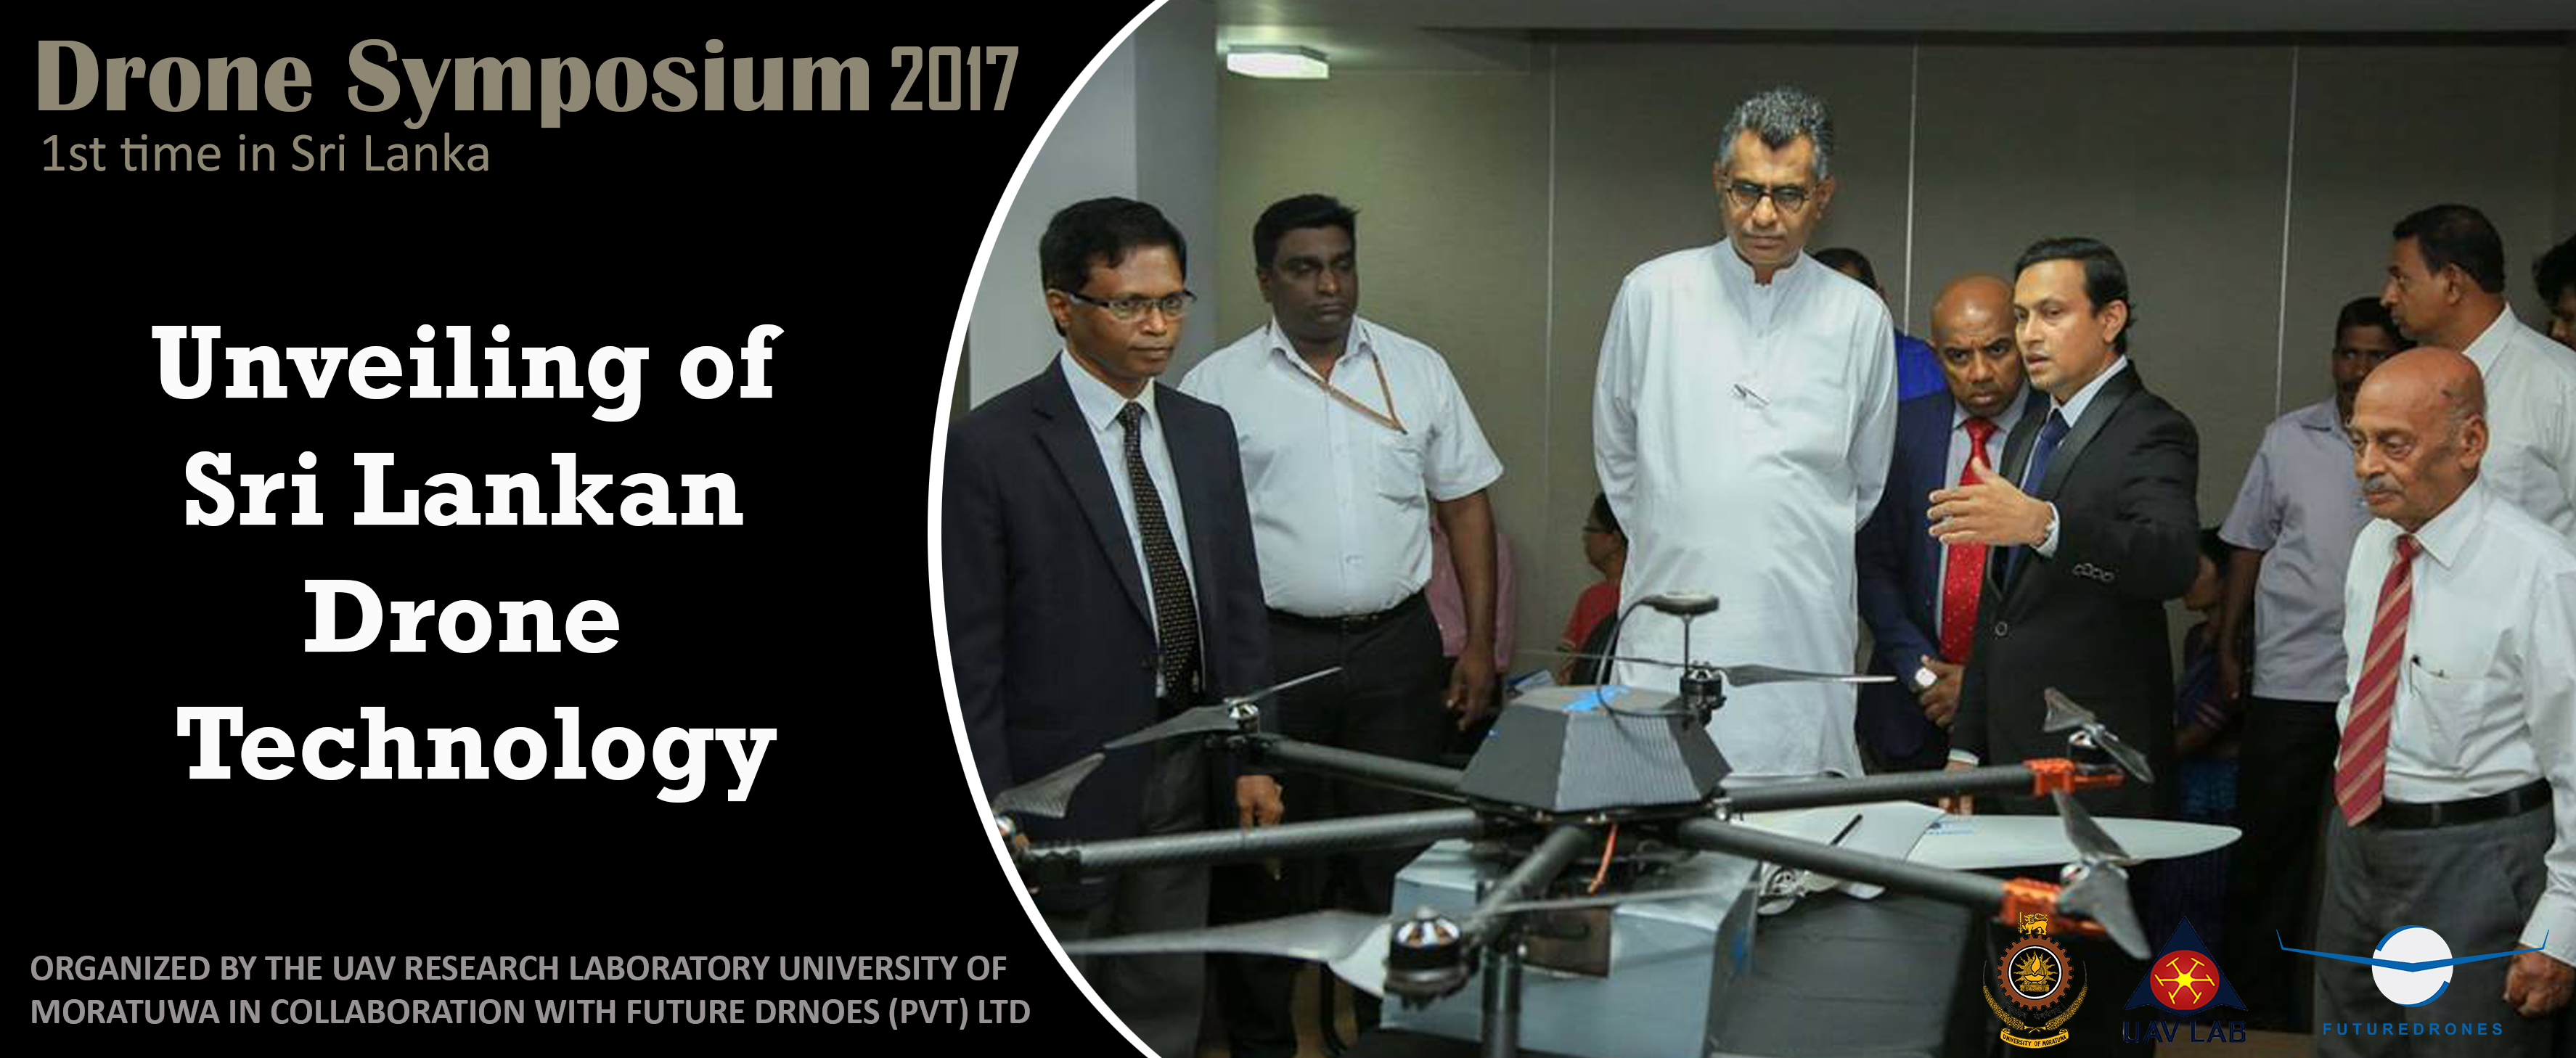 Drone Symposium 2017